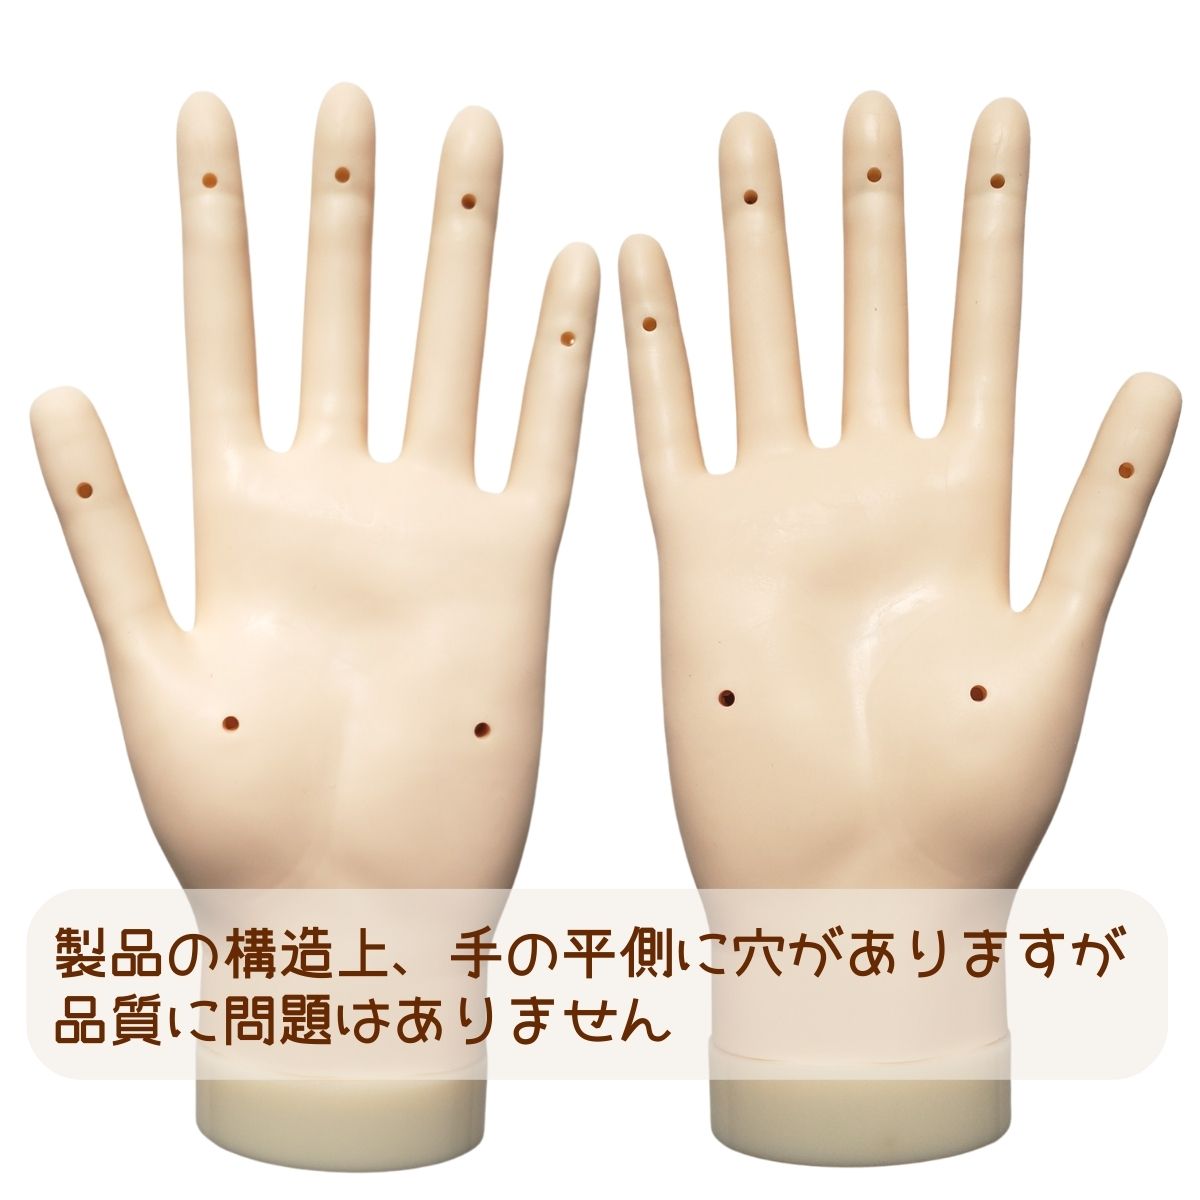 JNEC認定 滝川 STモデルハンド 右手 左手 両手セット 第1期認定モデル 